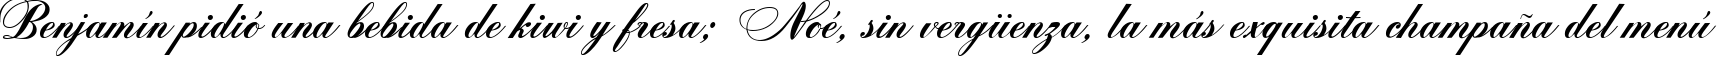 Пример написания шрифтом Zither Script текста на испанском